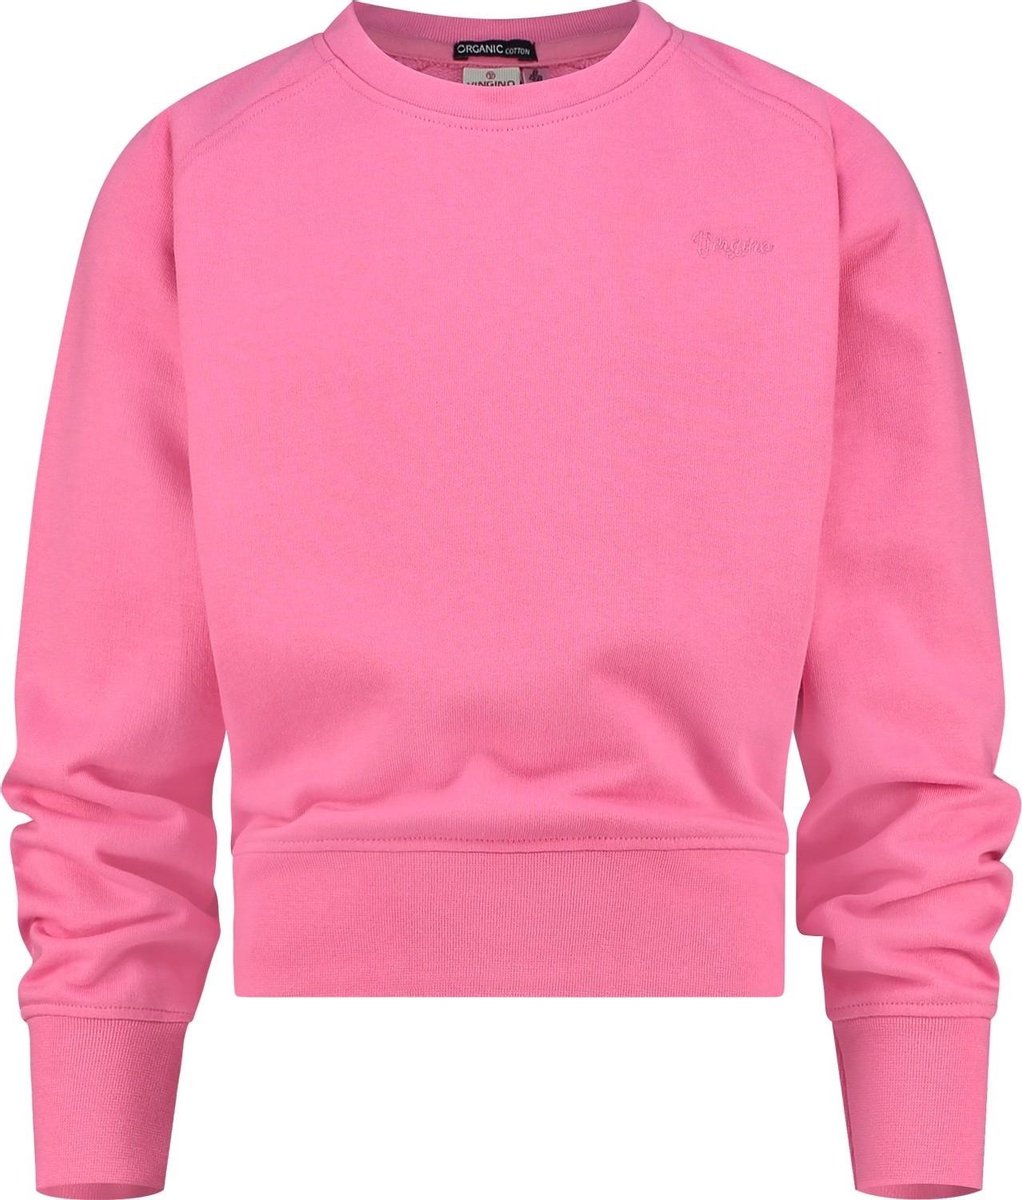 Vingino Sweater G-basic Meisjes Katoen Roze Maat 110